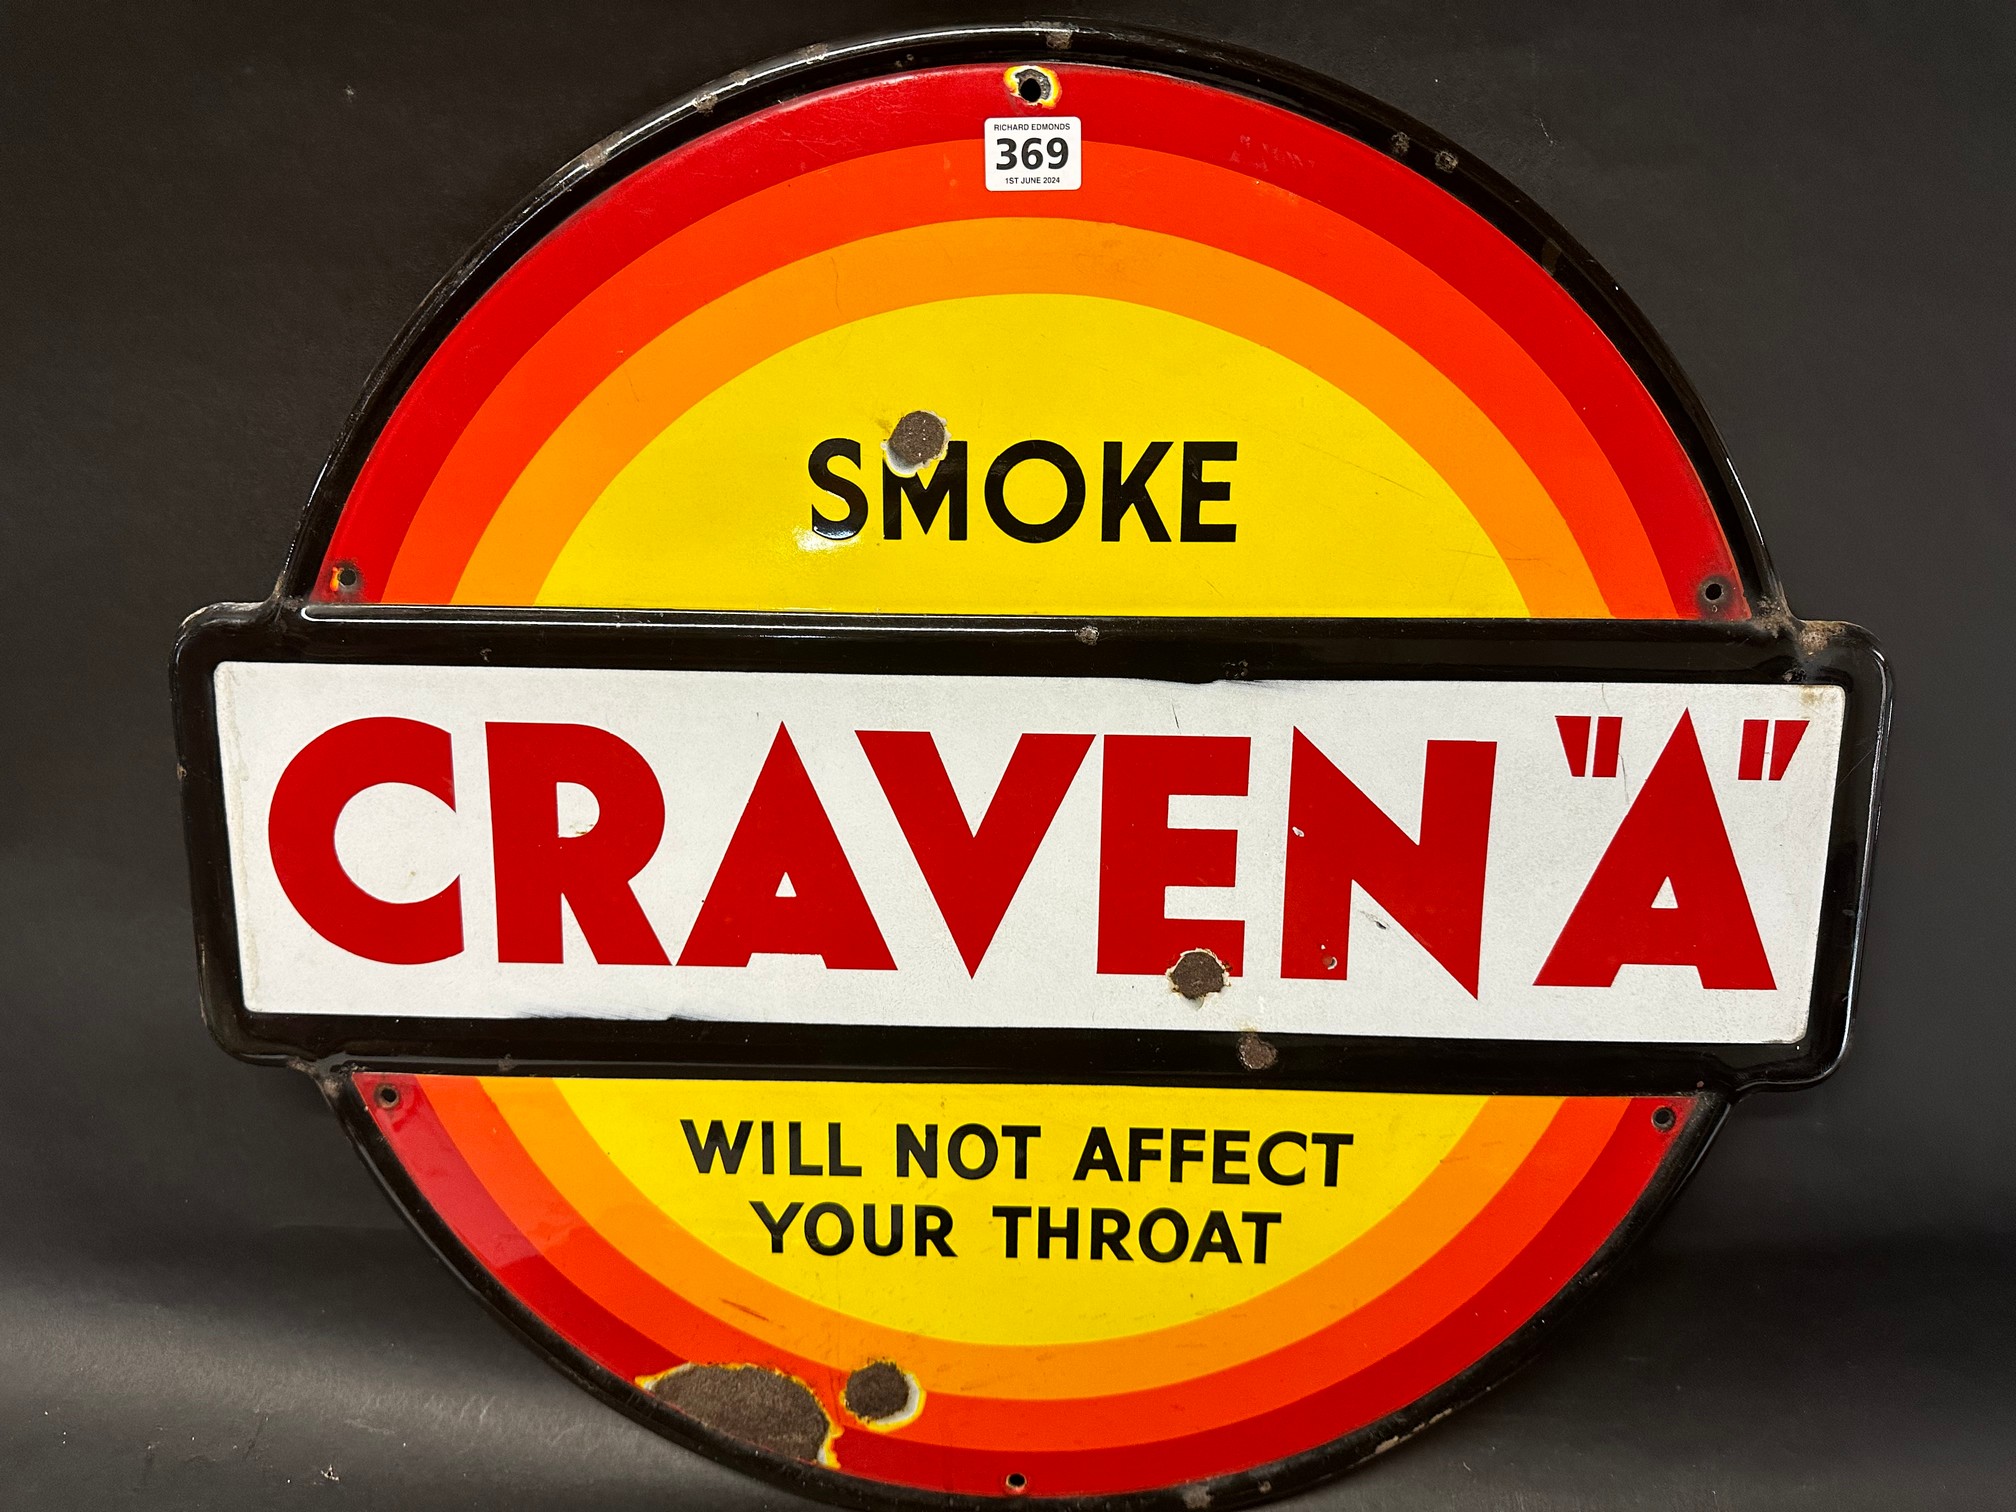 A Craven "A" circular enamel advertising sign, 24 x 22".